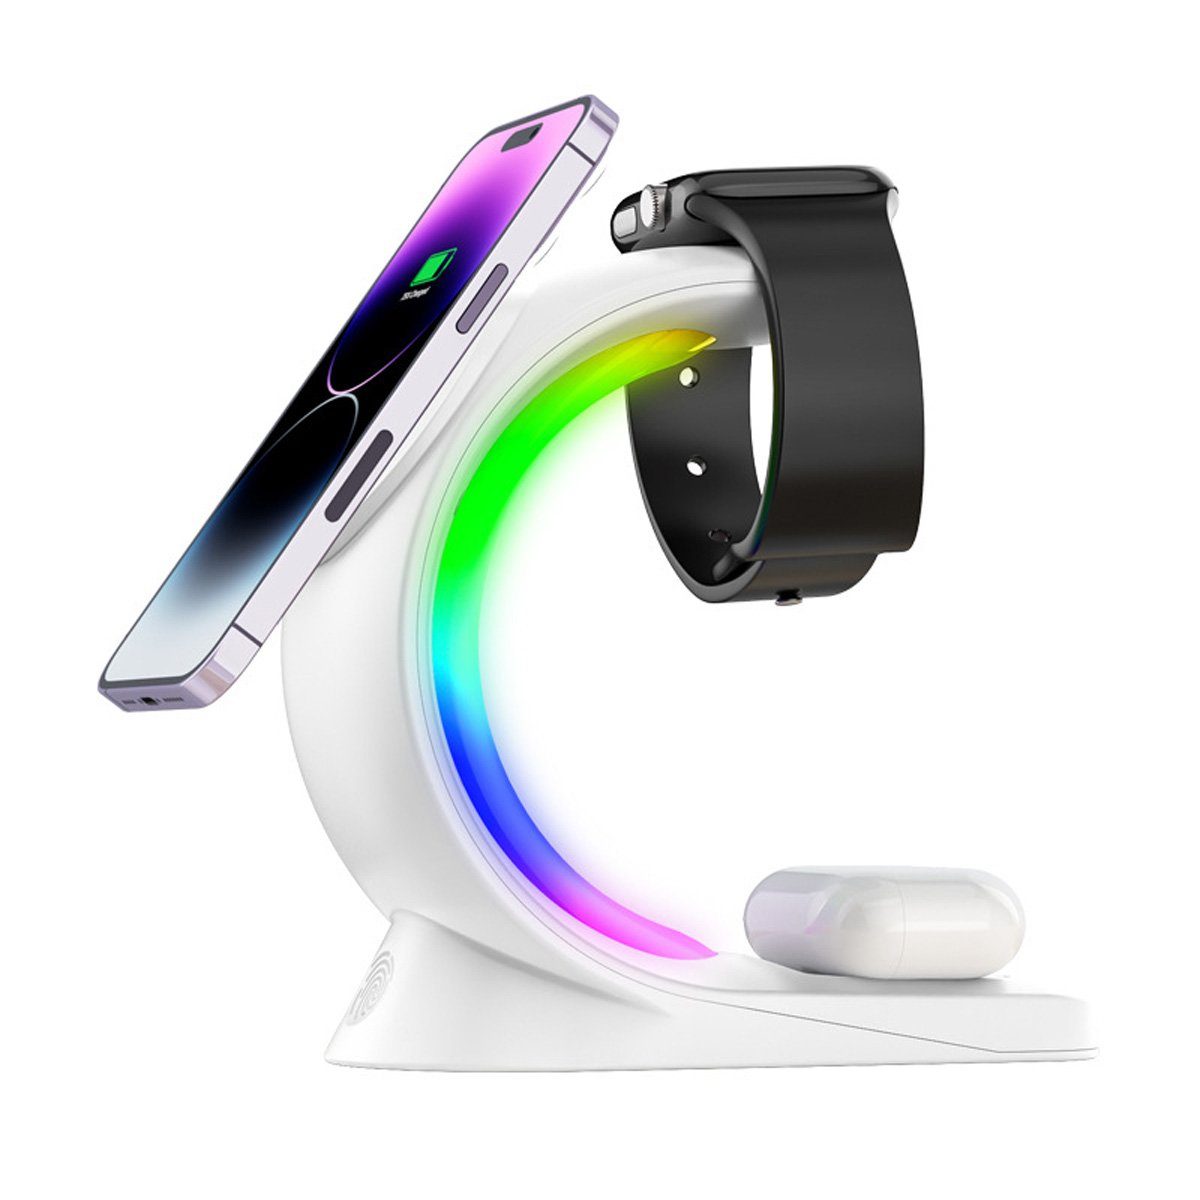 yozhiqu Smartphone-Dockingstation 3-in-1, 15W Schnelles Magnetisches Kabelladegerät Stand, 6-farbiges RGB-Licht, hohe Kompatibilität, rutschfester Ständer